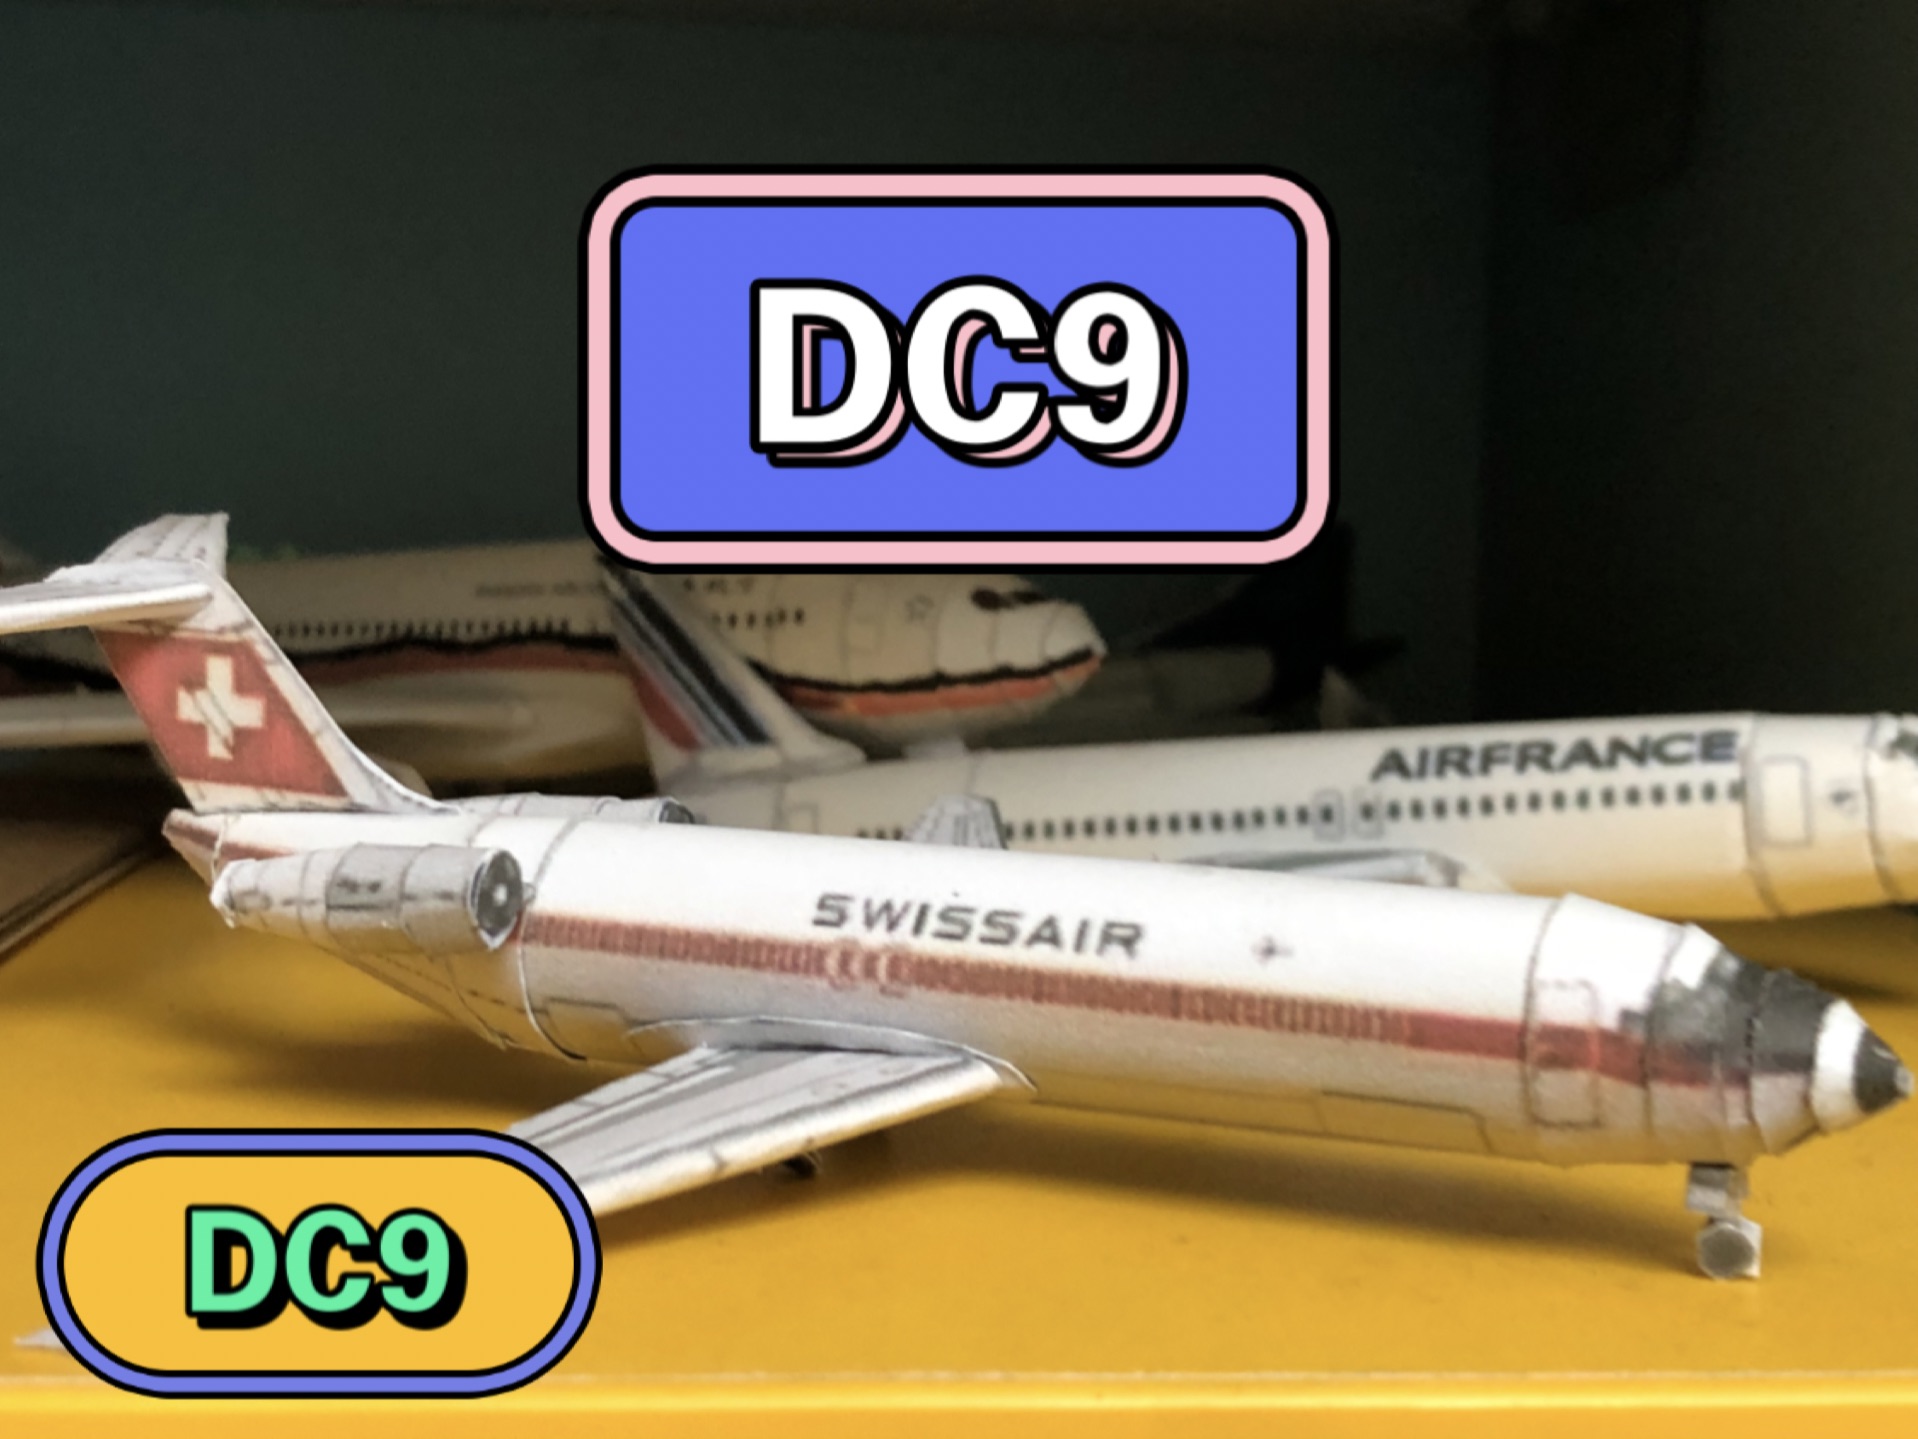 DC7客机 DC6客机 区分图片